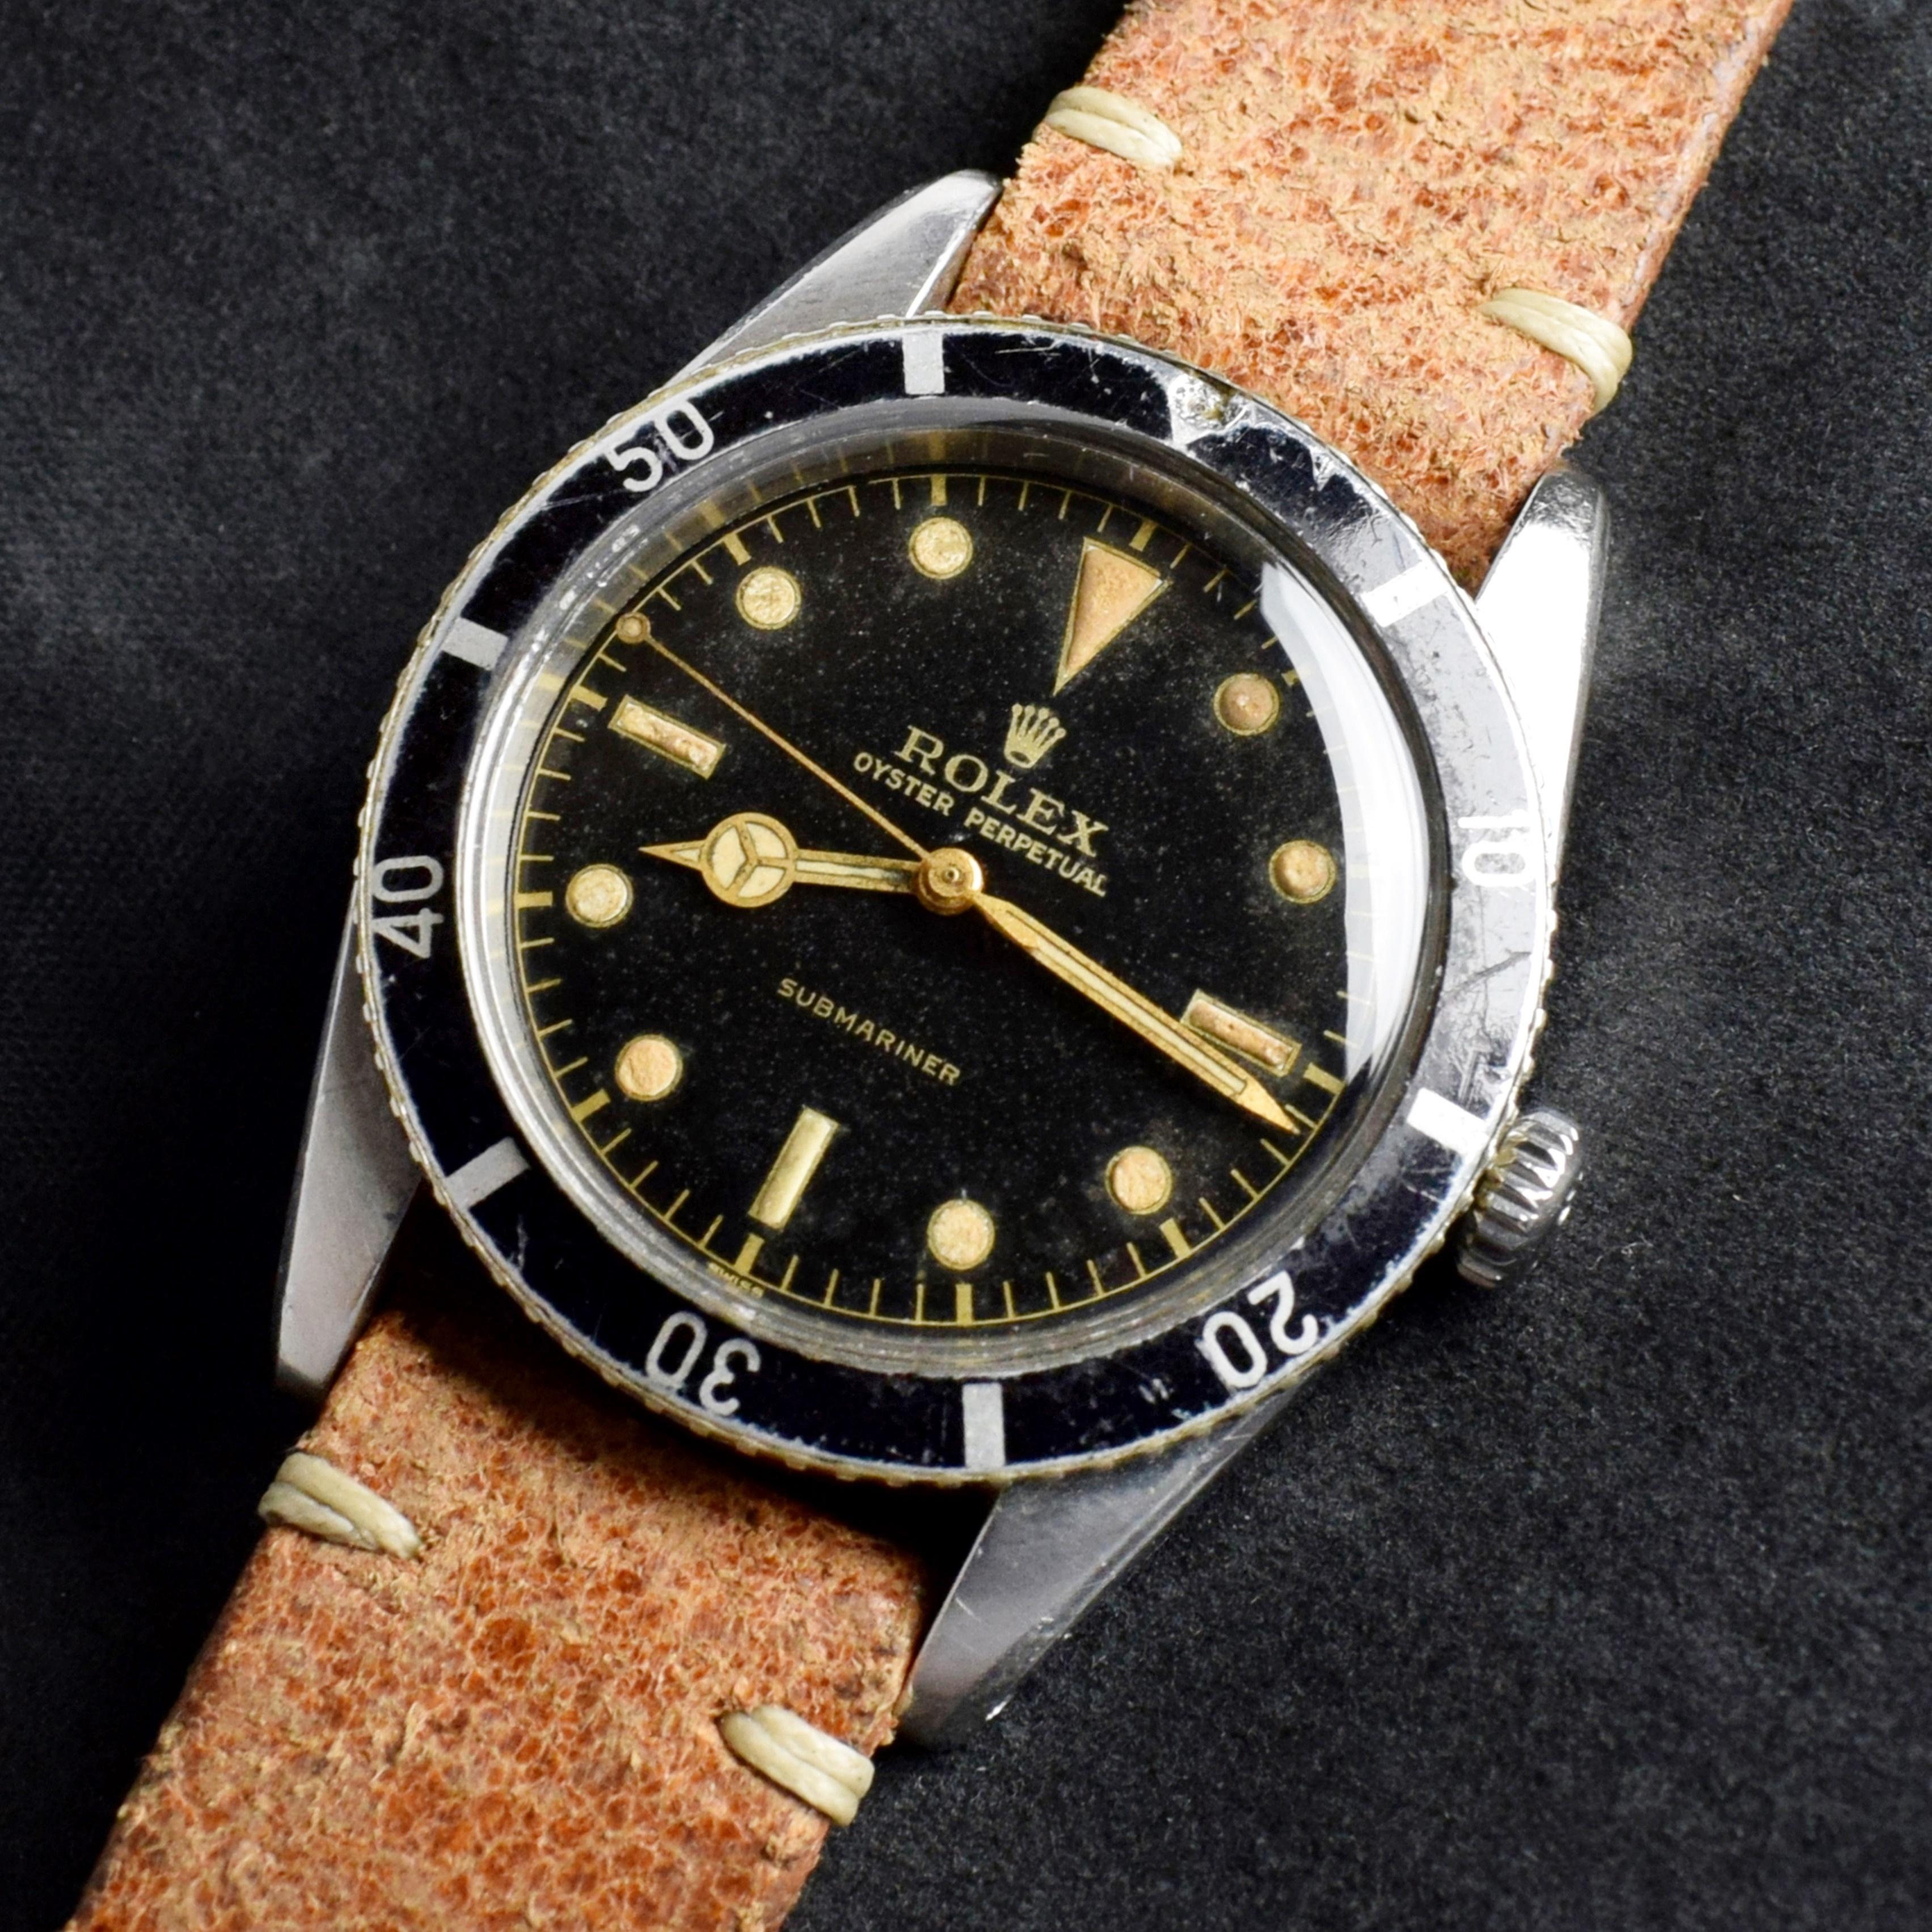 Marke: Vintage Rolex
Modell: 6205
Jahr: 1954
Seriennummer: 21xxx
Referenz: OT1504

Das Modell 6204 wurde 1953 als erste U-Boot-Uhr mit kleiner Krone produziert und garantierte eine Tiefe von 100 Metern. Das Modell 6205 war nach dem Modell 6204